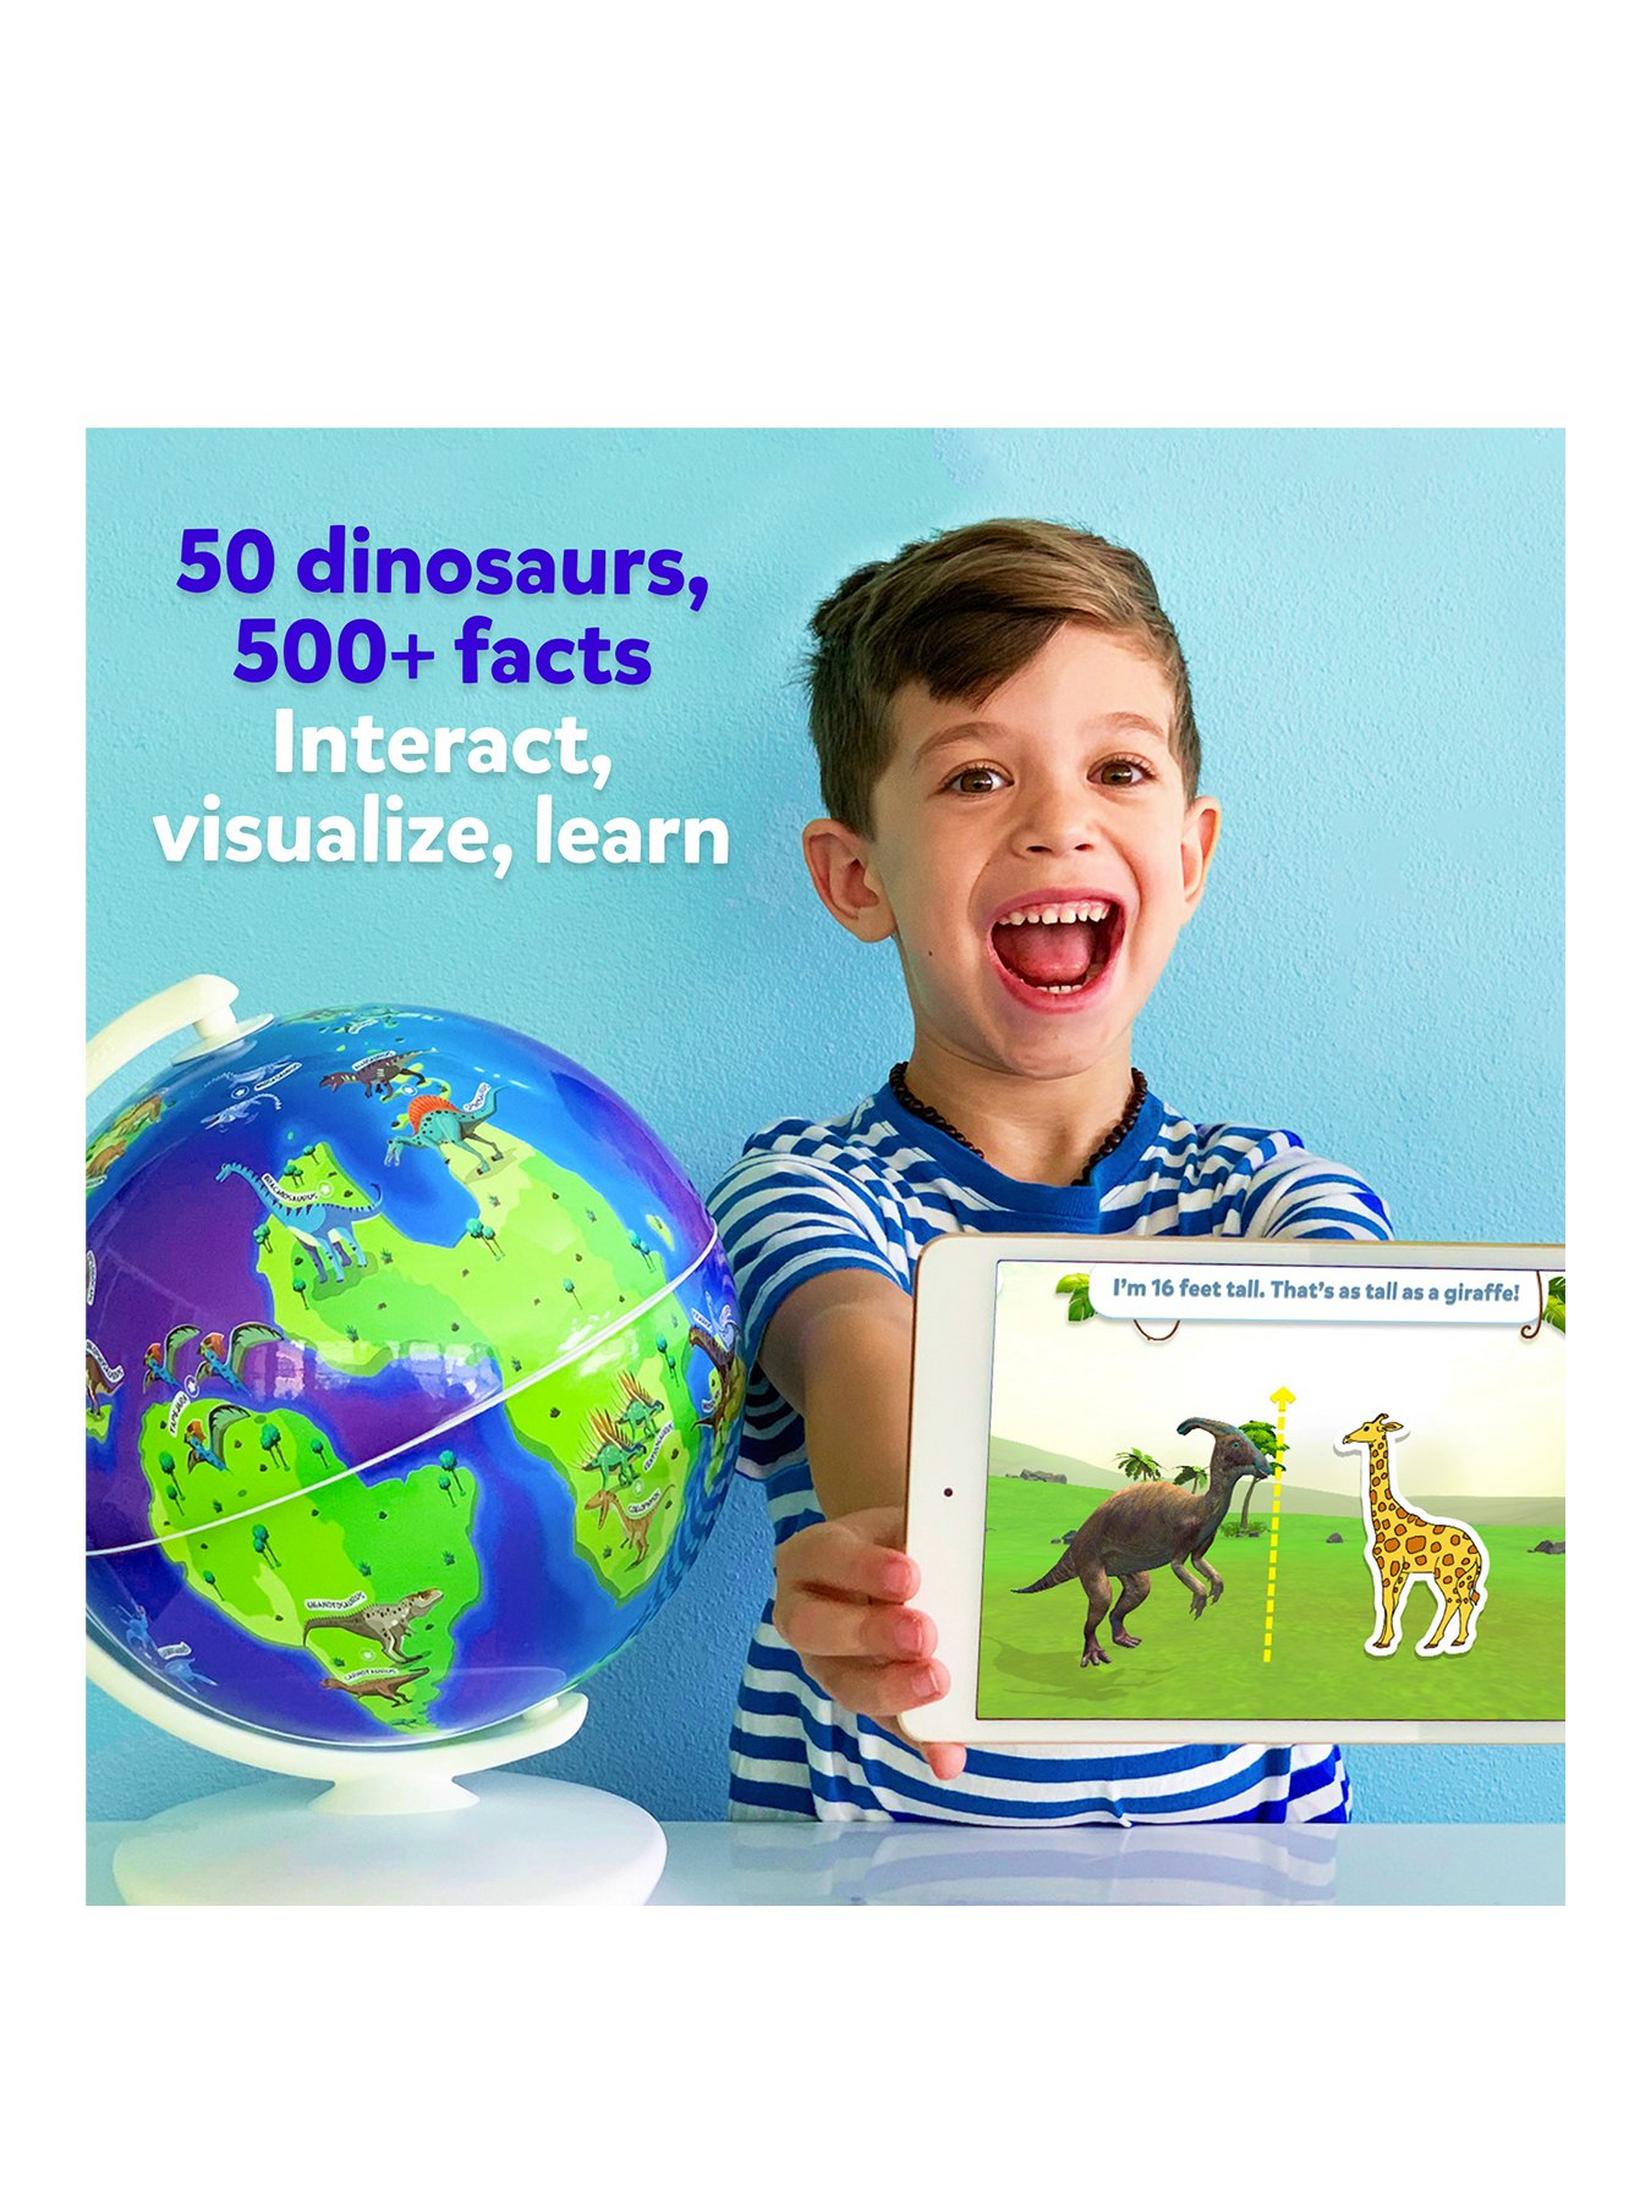 Orboot Dinos by PlayShifu - Interactive Dinosaur Globe